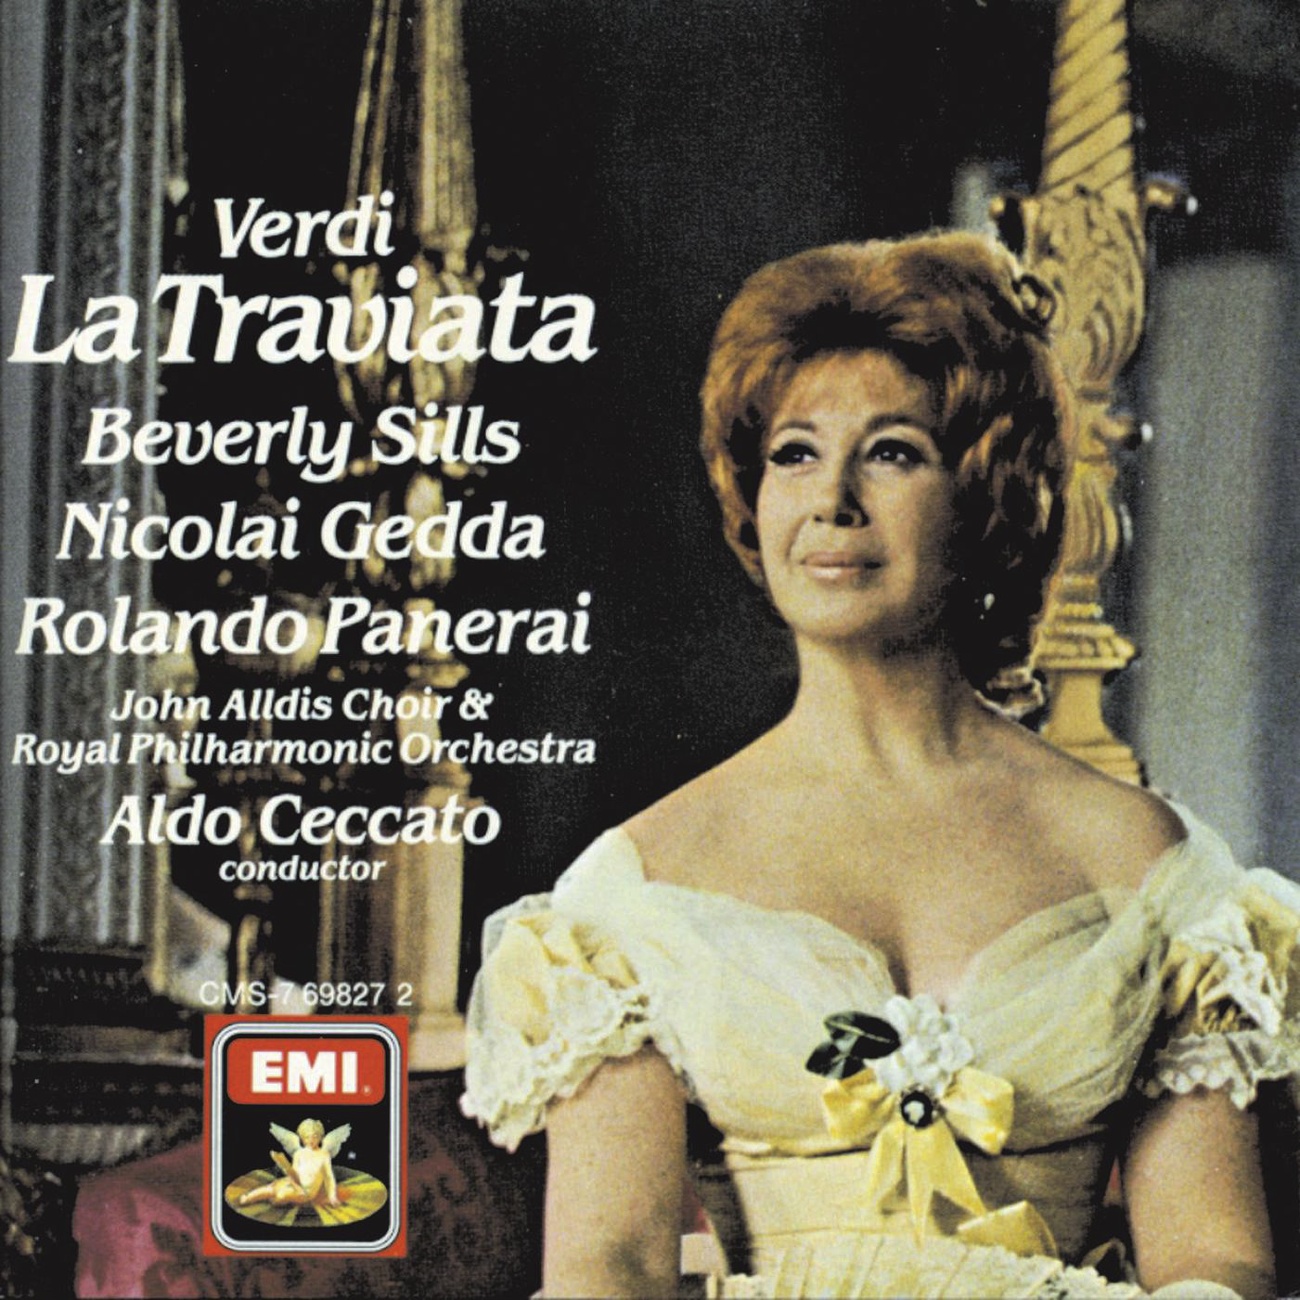 La Traviata (1988 Digital Remaster), Act III: Signora! Che t'accadde? (Annina/Violetta/Alfredo)